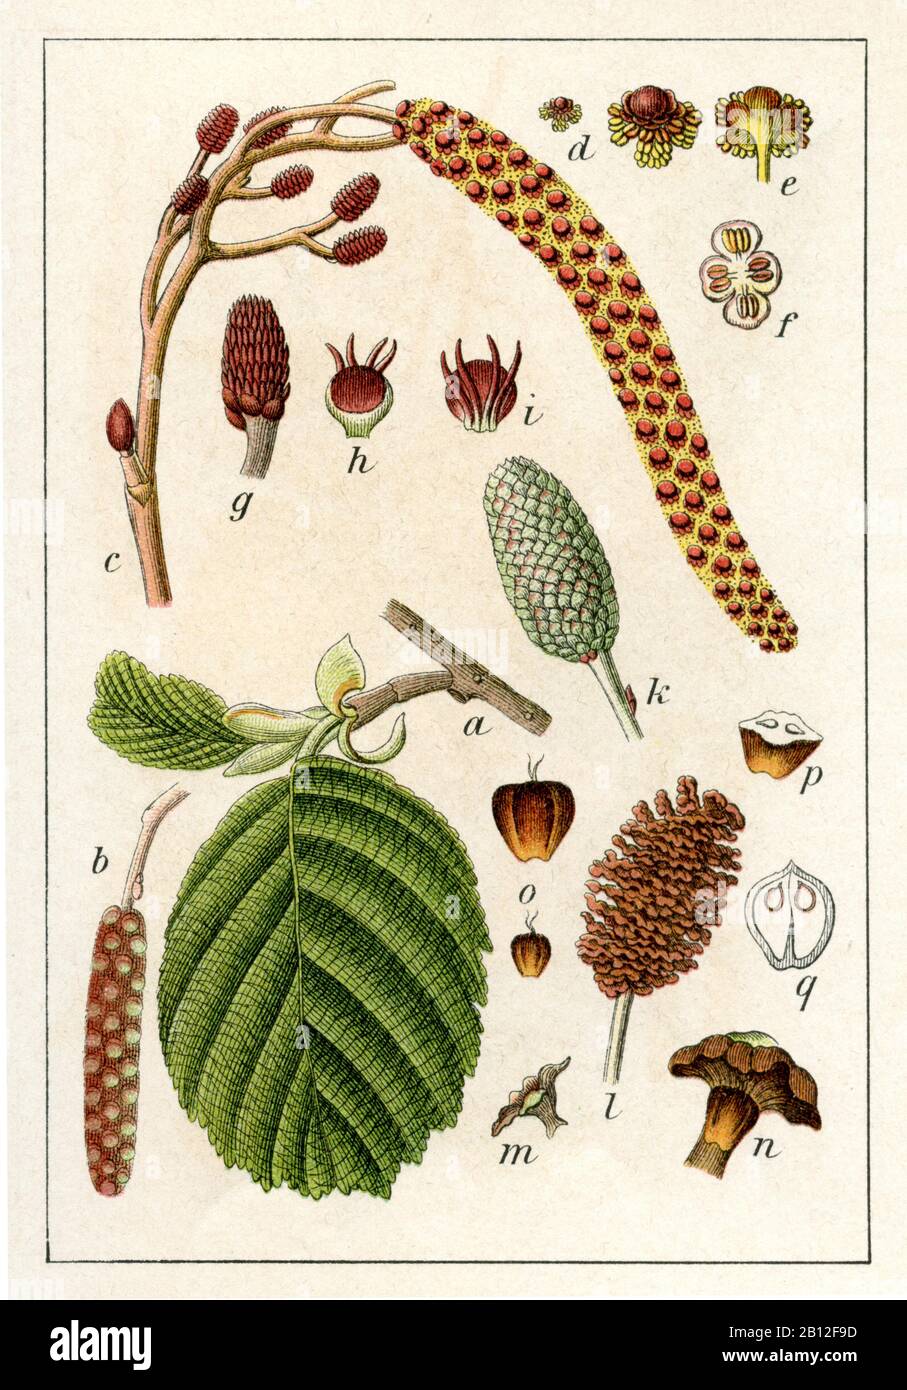 alder, Alnus glutinosa, Erle, Schwarzerle, aulne,  (botany book, 1905) Stock Photo